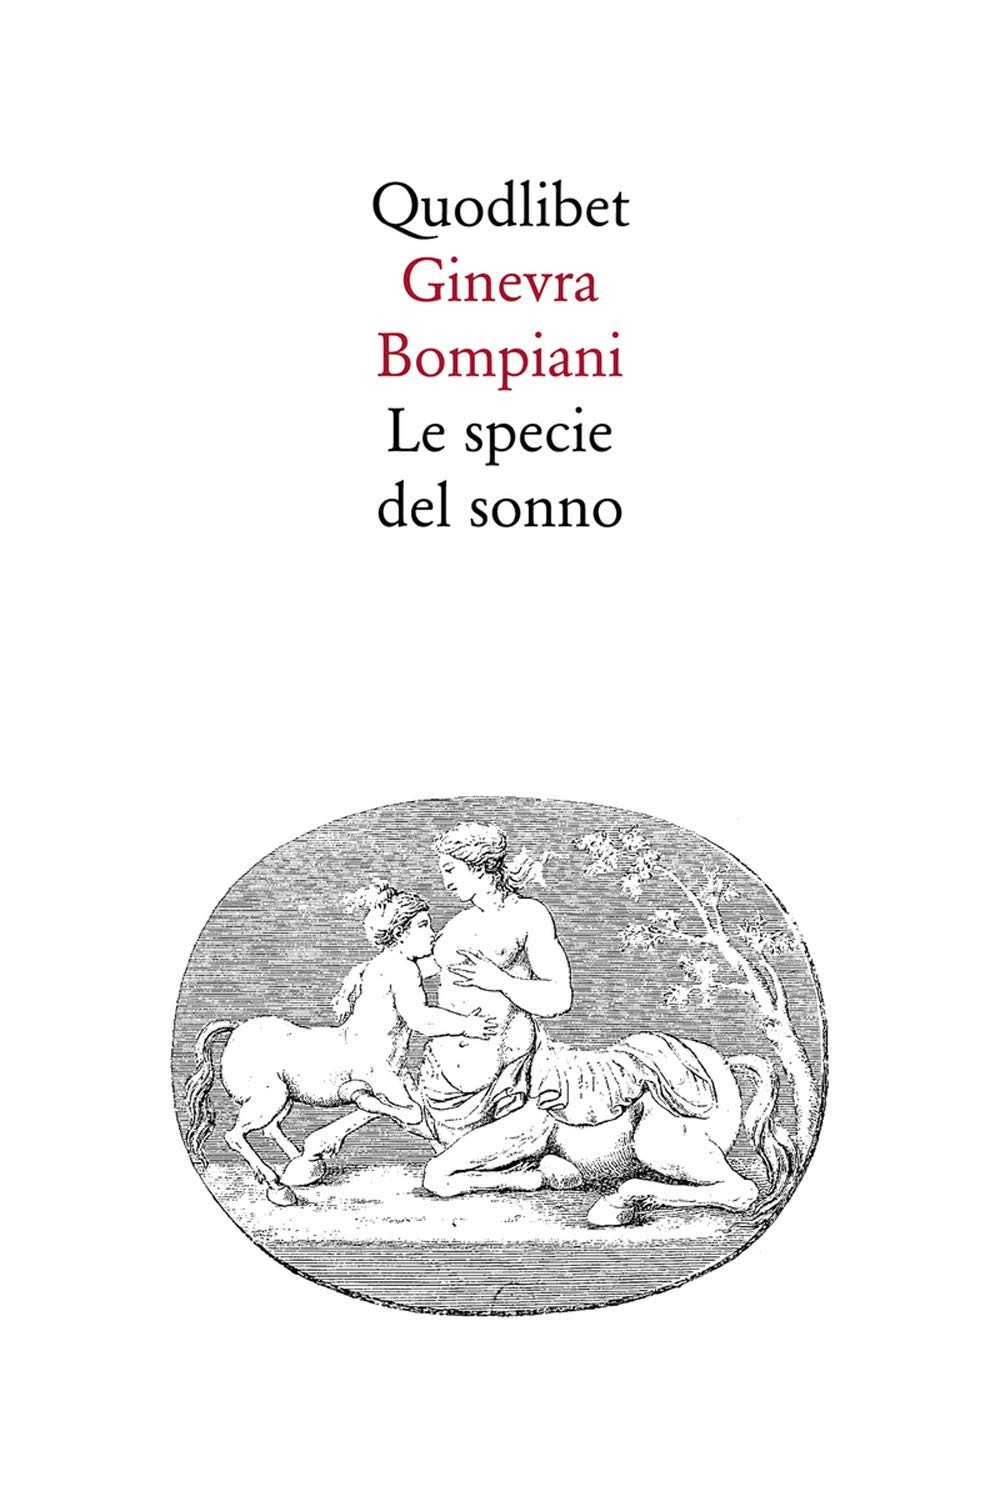 Ginevra Bompiani, Le specie del sonno (Quodlibet, Macerata 1998)